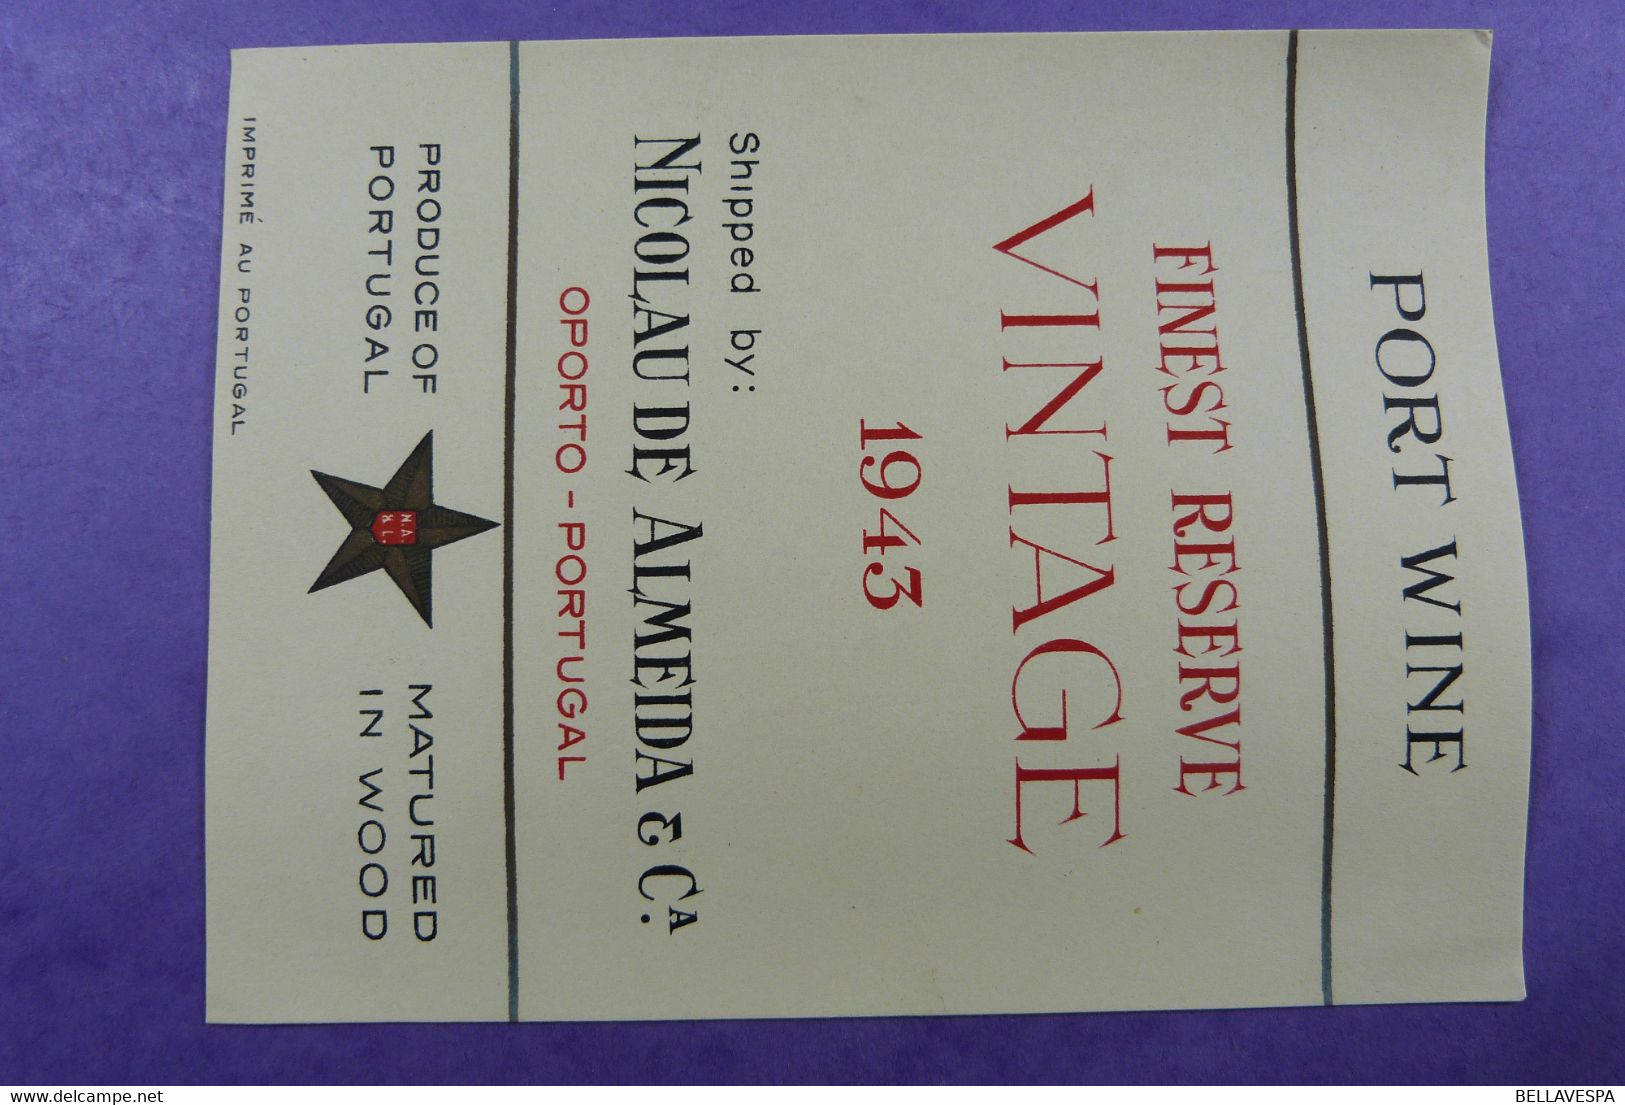 Wijn Vin  NOS Lot X 19  étiquette de vin-wine label France -sixties seventies